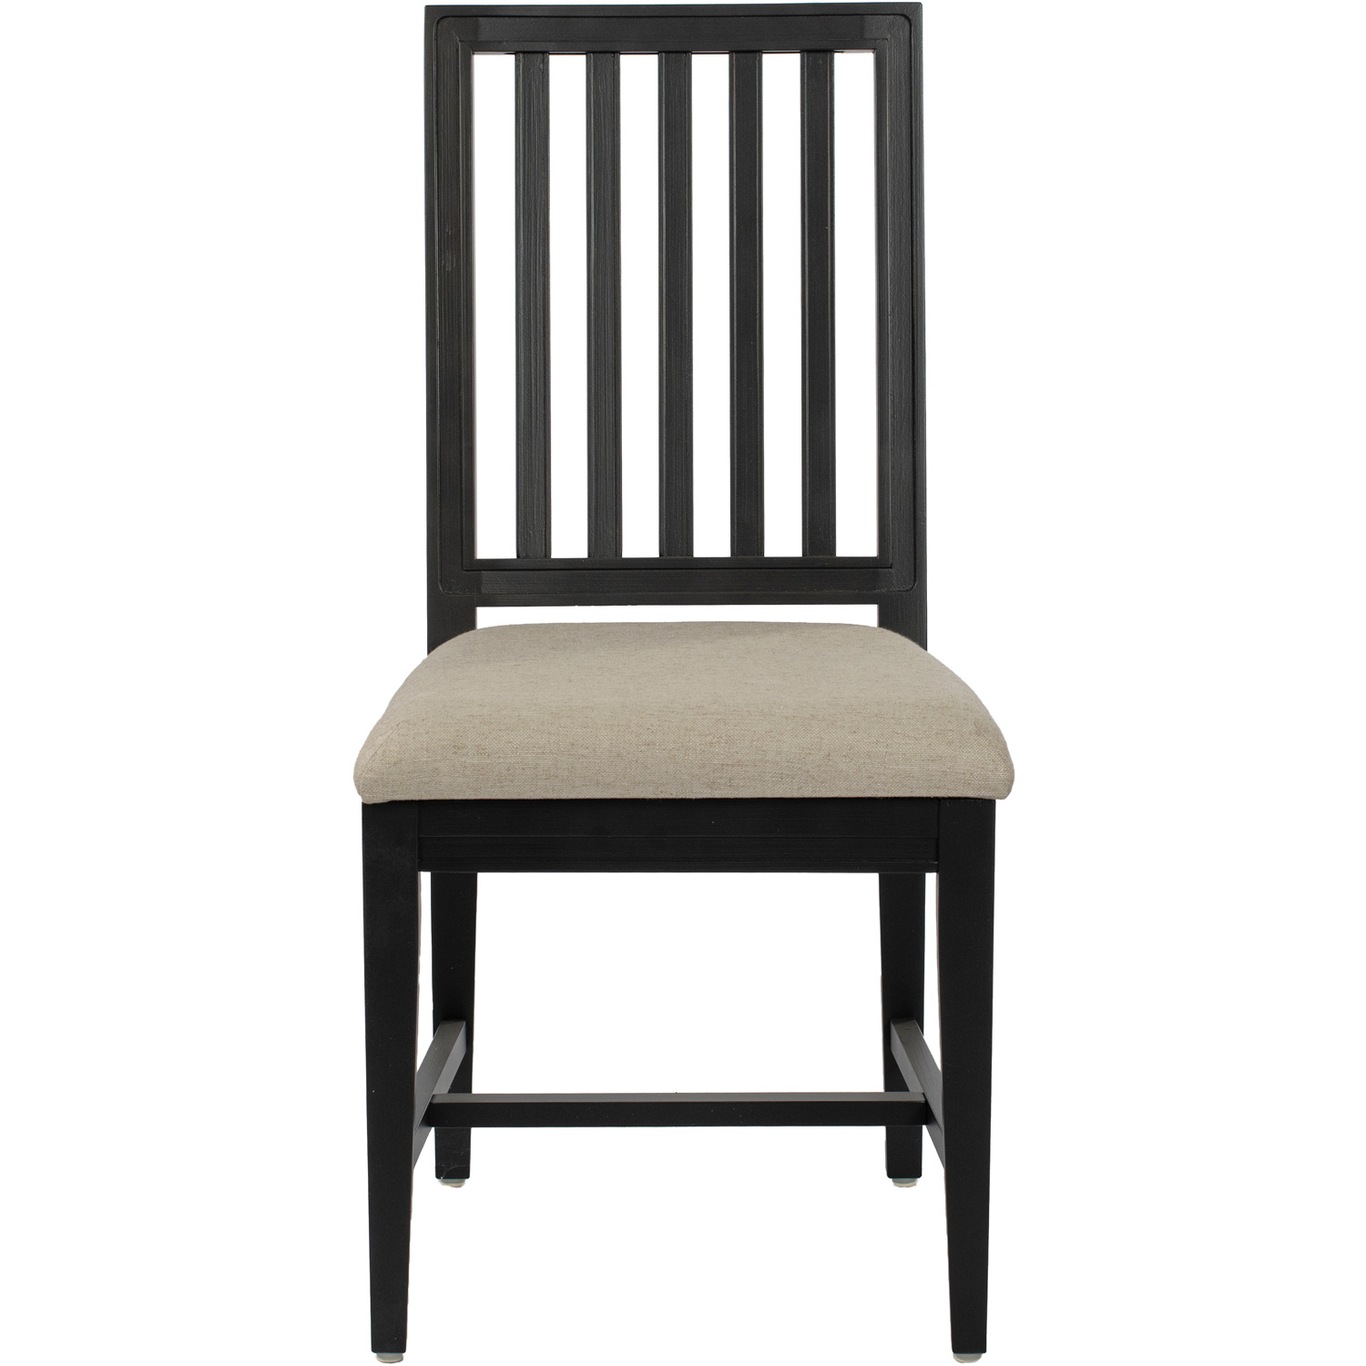 Classic Chair 2.0, Black / Piquet Clay 84